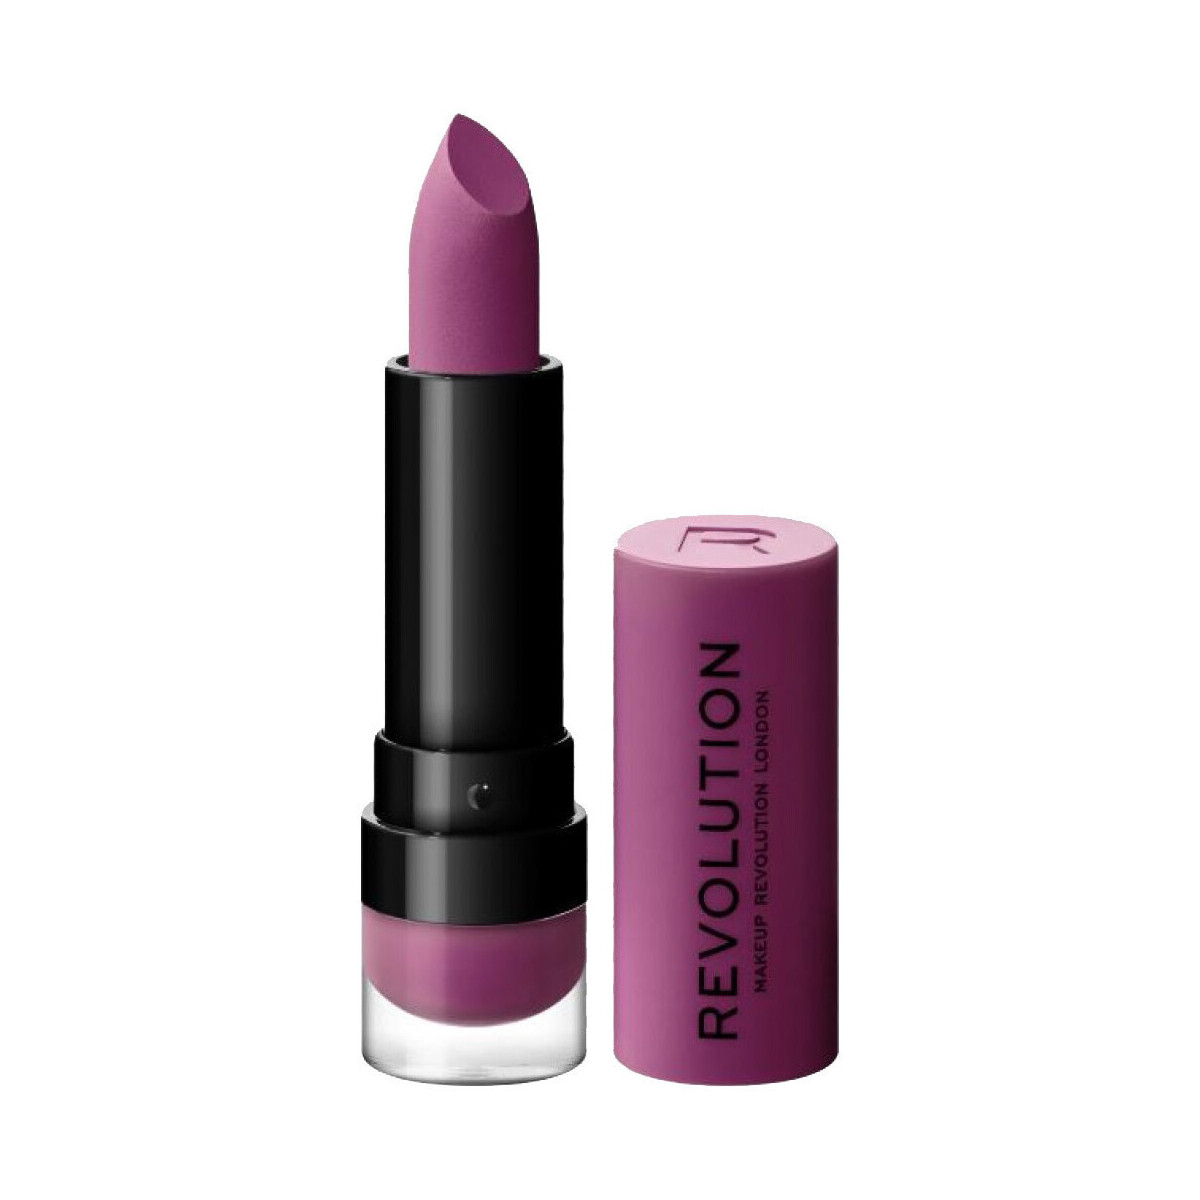 schoonheid Dames Lipstick Makeup Revolution  Violet